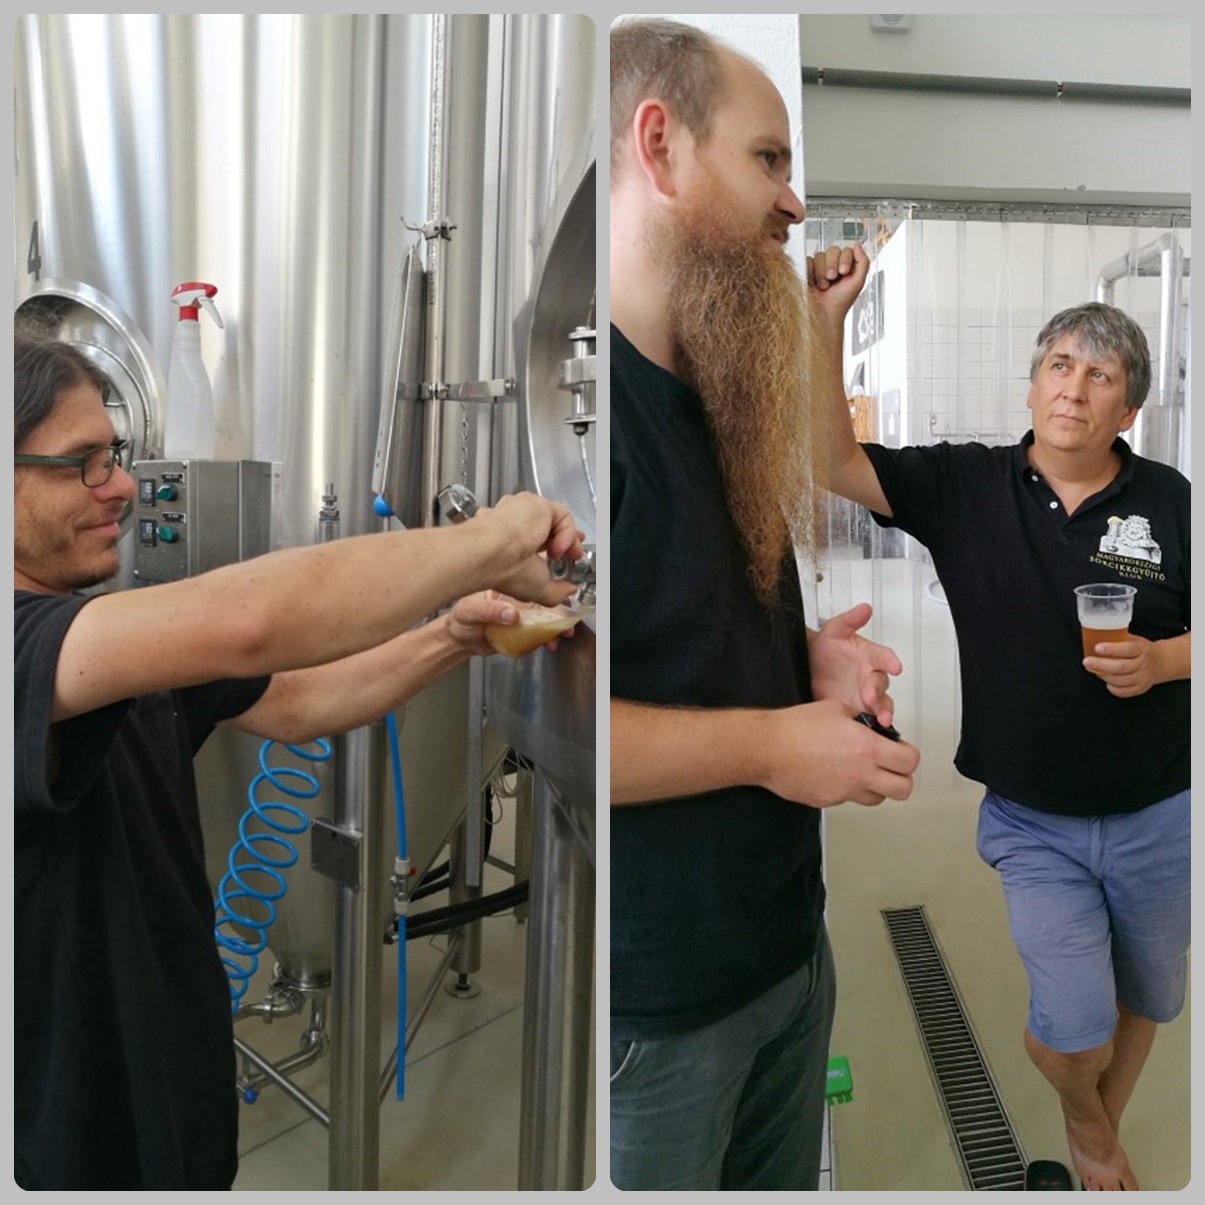 Közös kocsmalátogatások a Magyarországi Sörcikkgyűjtő Klubbal - Fehér Nyúl Brewery - főzdelátogatás és sörkóstolás tartályról - Kocsmaturista